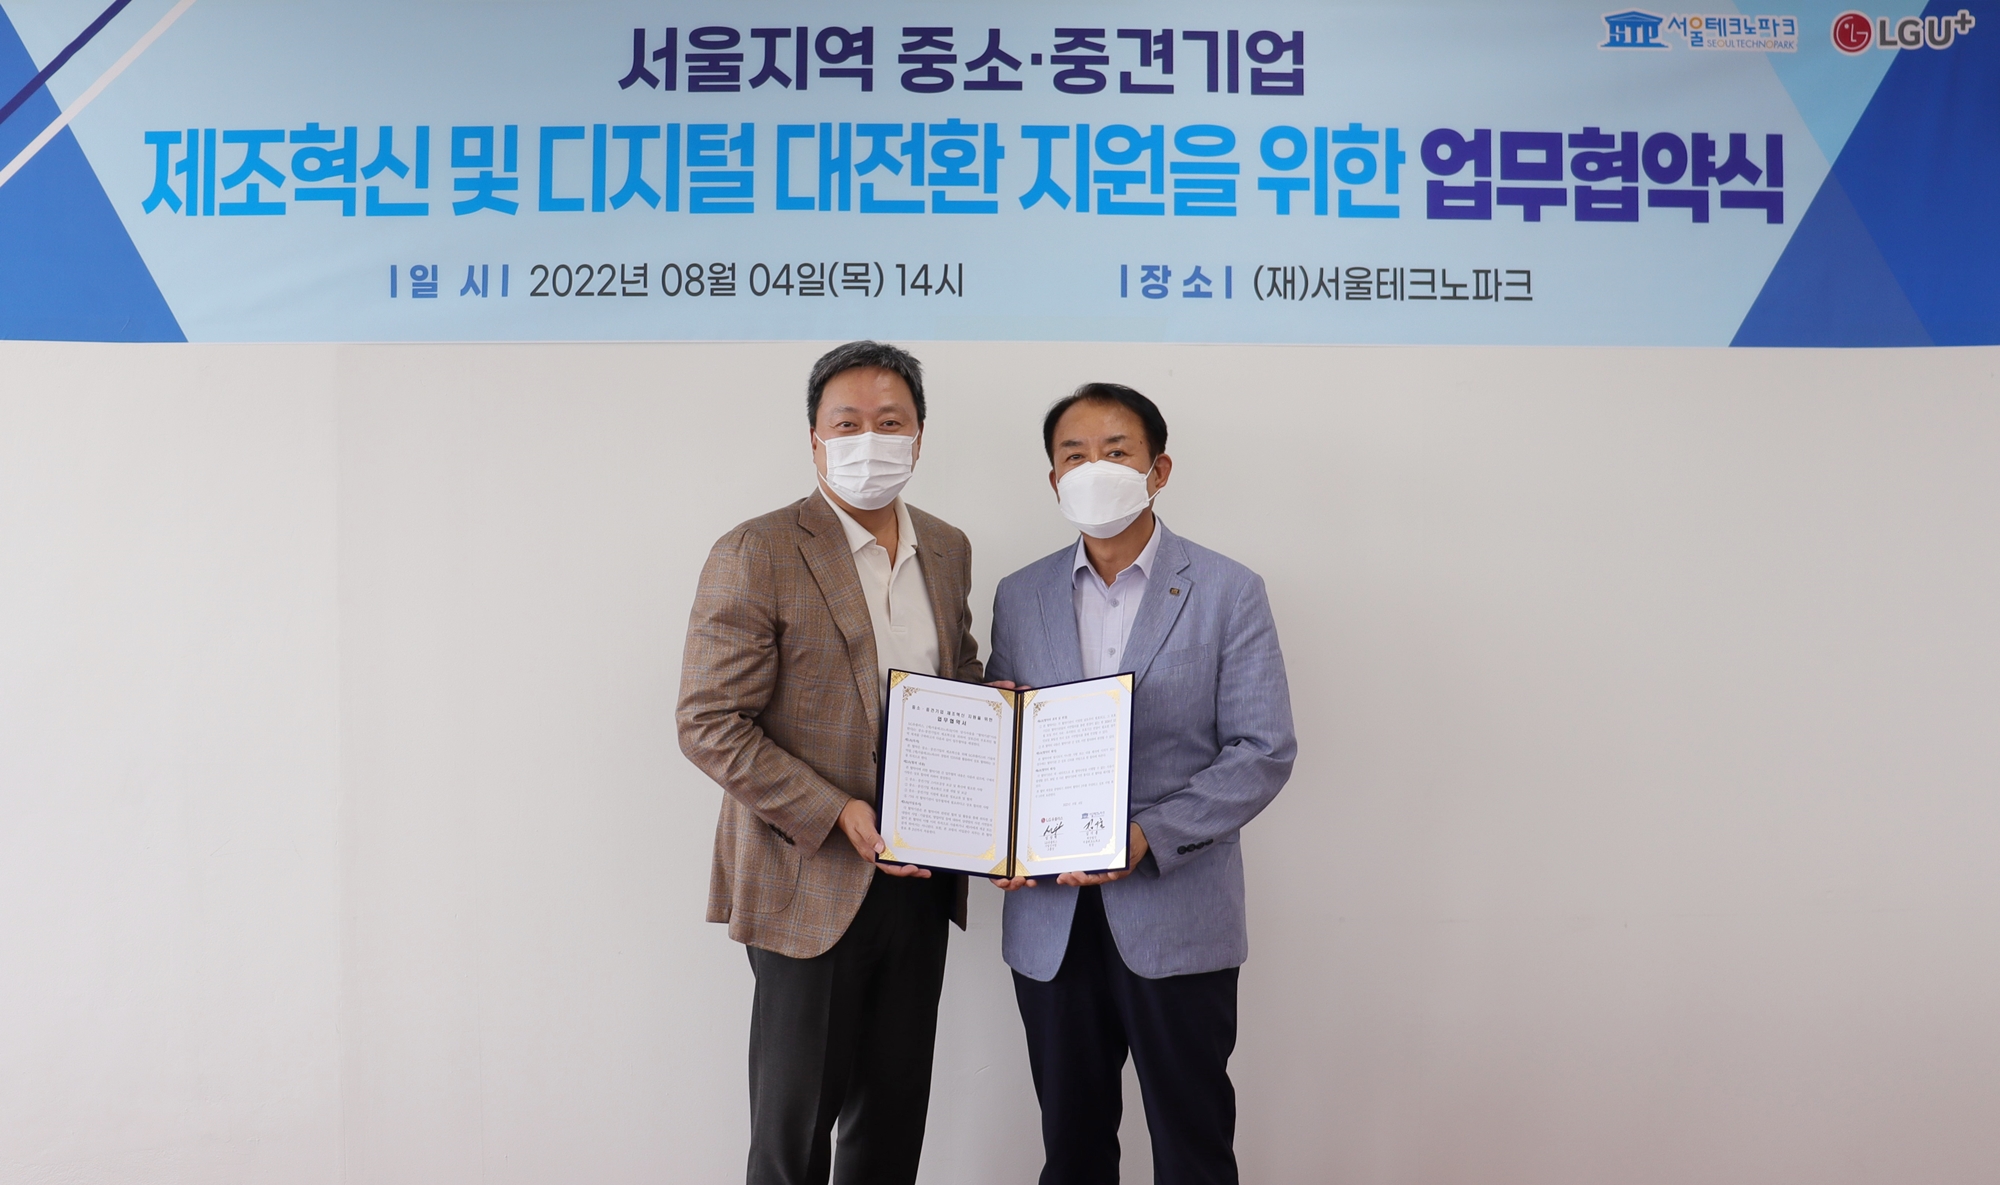 서울지역 중소,중견기업 제조혁신 및 디지털 대전환 지원을 위한 업무협약식 배너 앞에 협약서를 들고 있는 두 남성의 모습